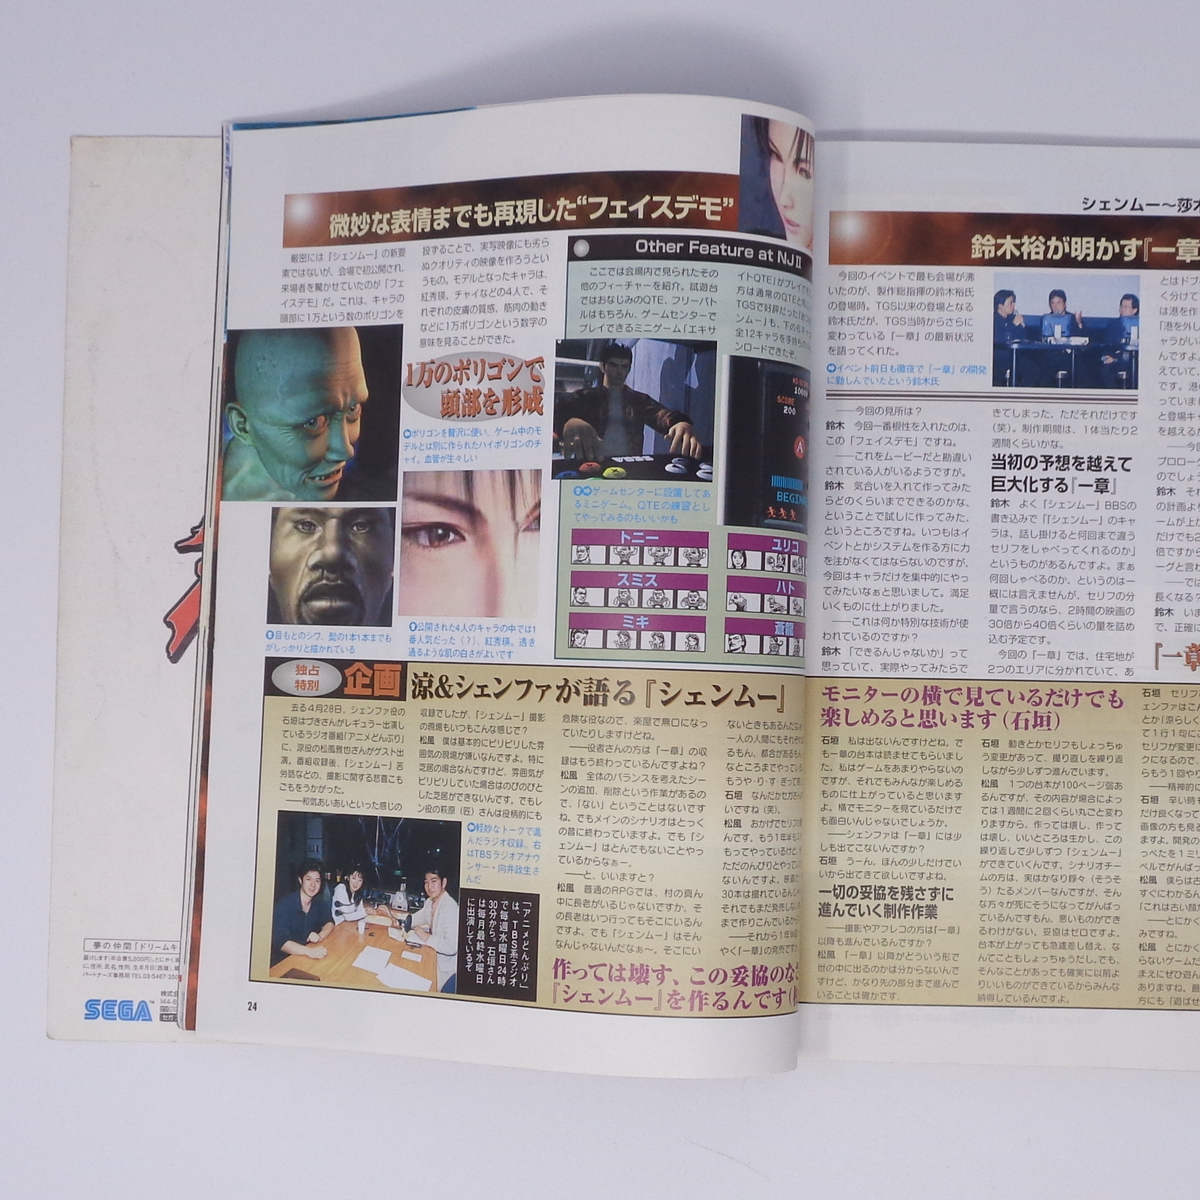 ドリームキャストFAN 1999年5月28日号 No.11 /セガCM戦略再検証/シーマン/フレンズ/DreamCast FAN/ゲーム雑誌[Free Shipping]_画像10